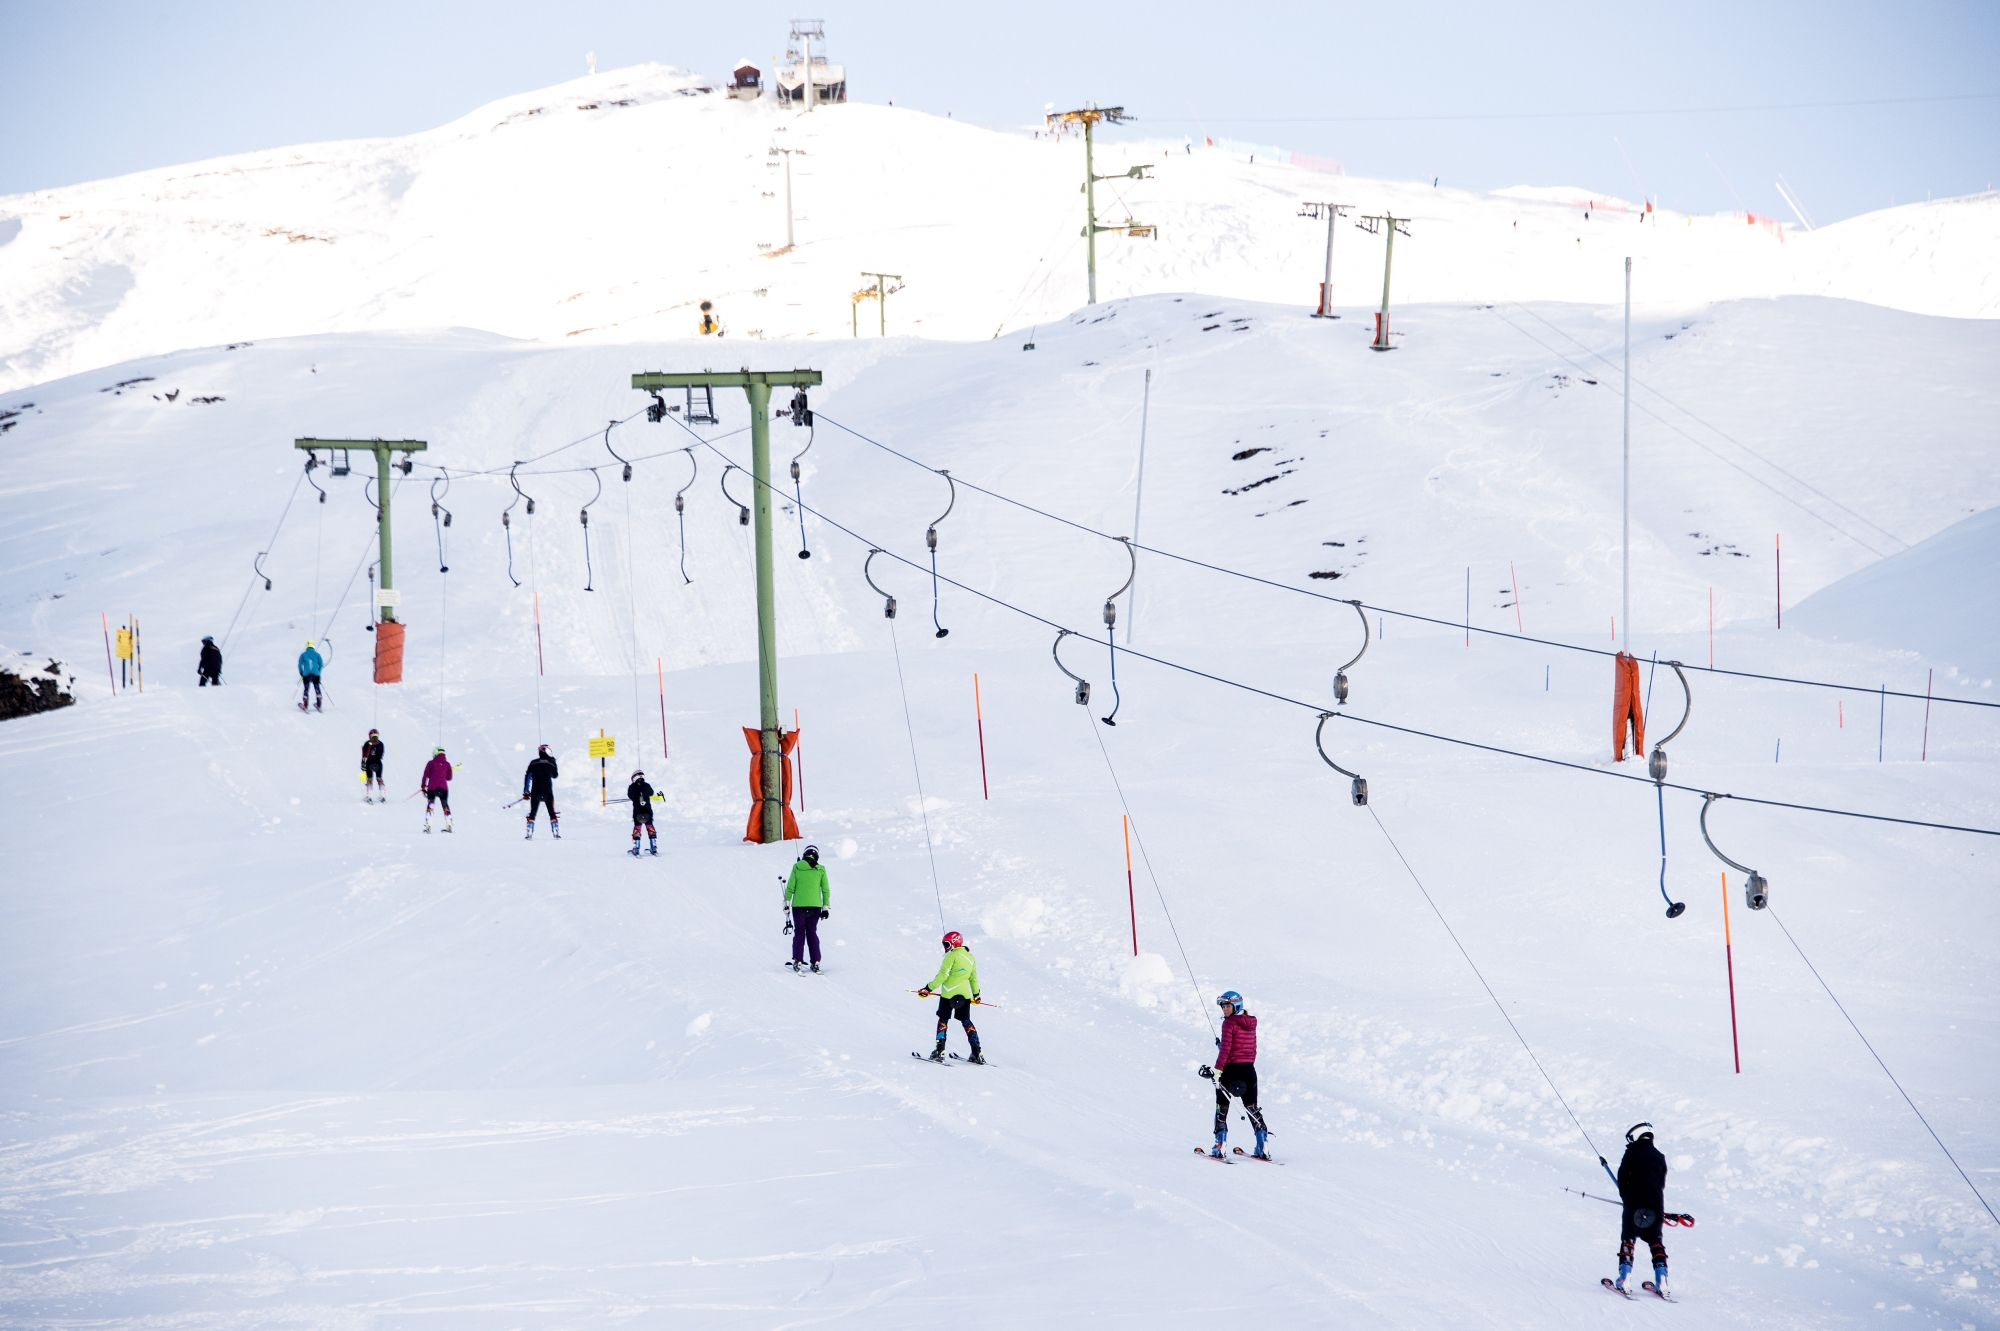 En fin de saison hivernale, 2,8 millions de journées skiées ont été comptabilisées dans les 25 stations du Magic Pass.